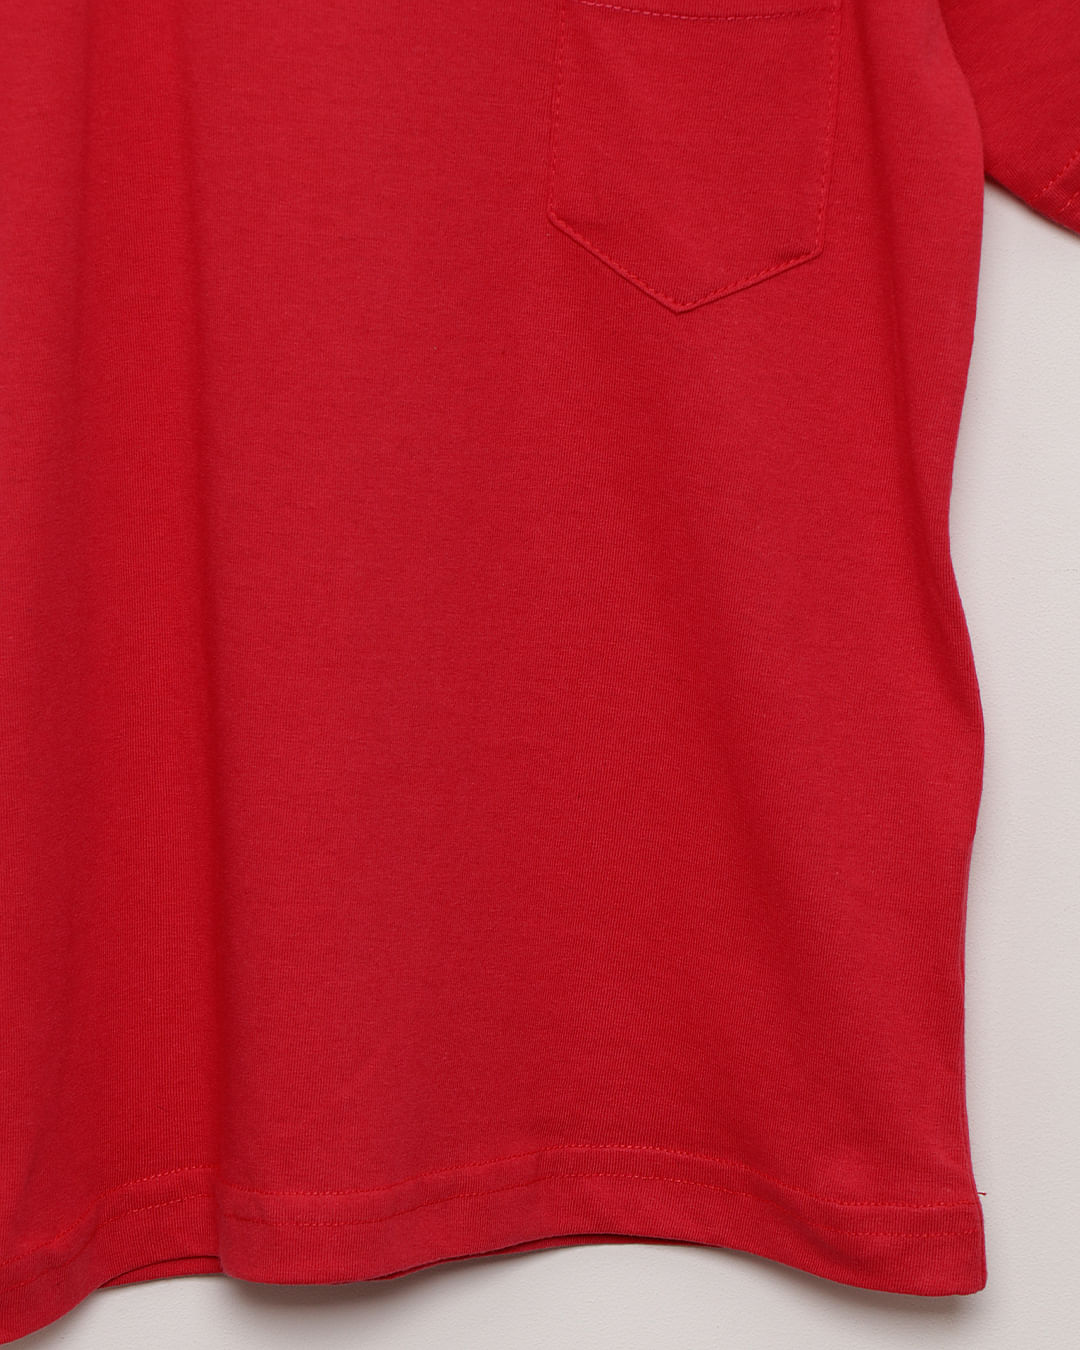 Camiseta-Mc-T38403-Vermelho-Masc13---Vermelho-Medio